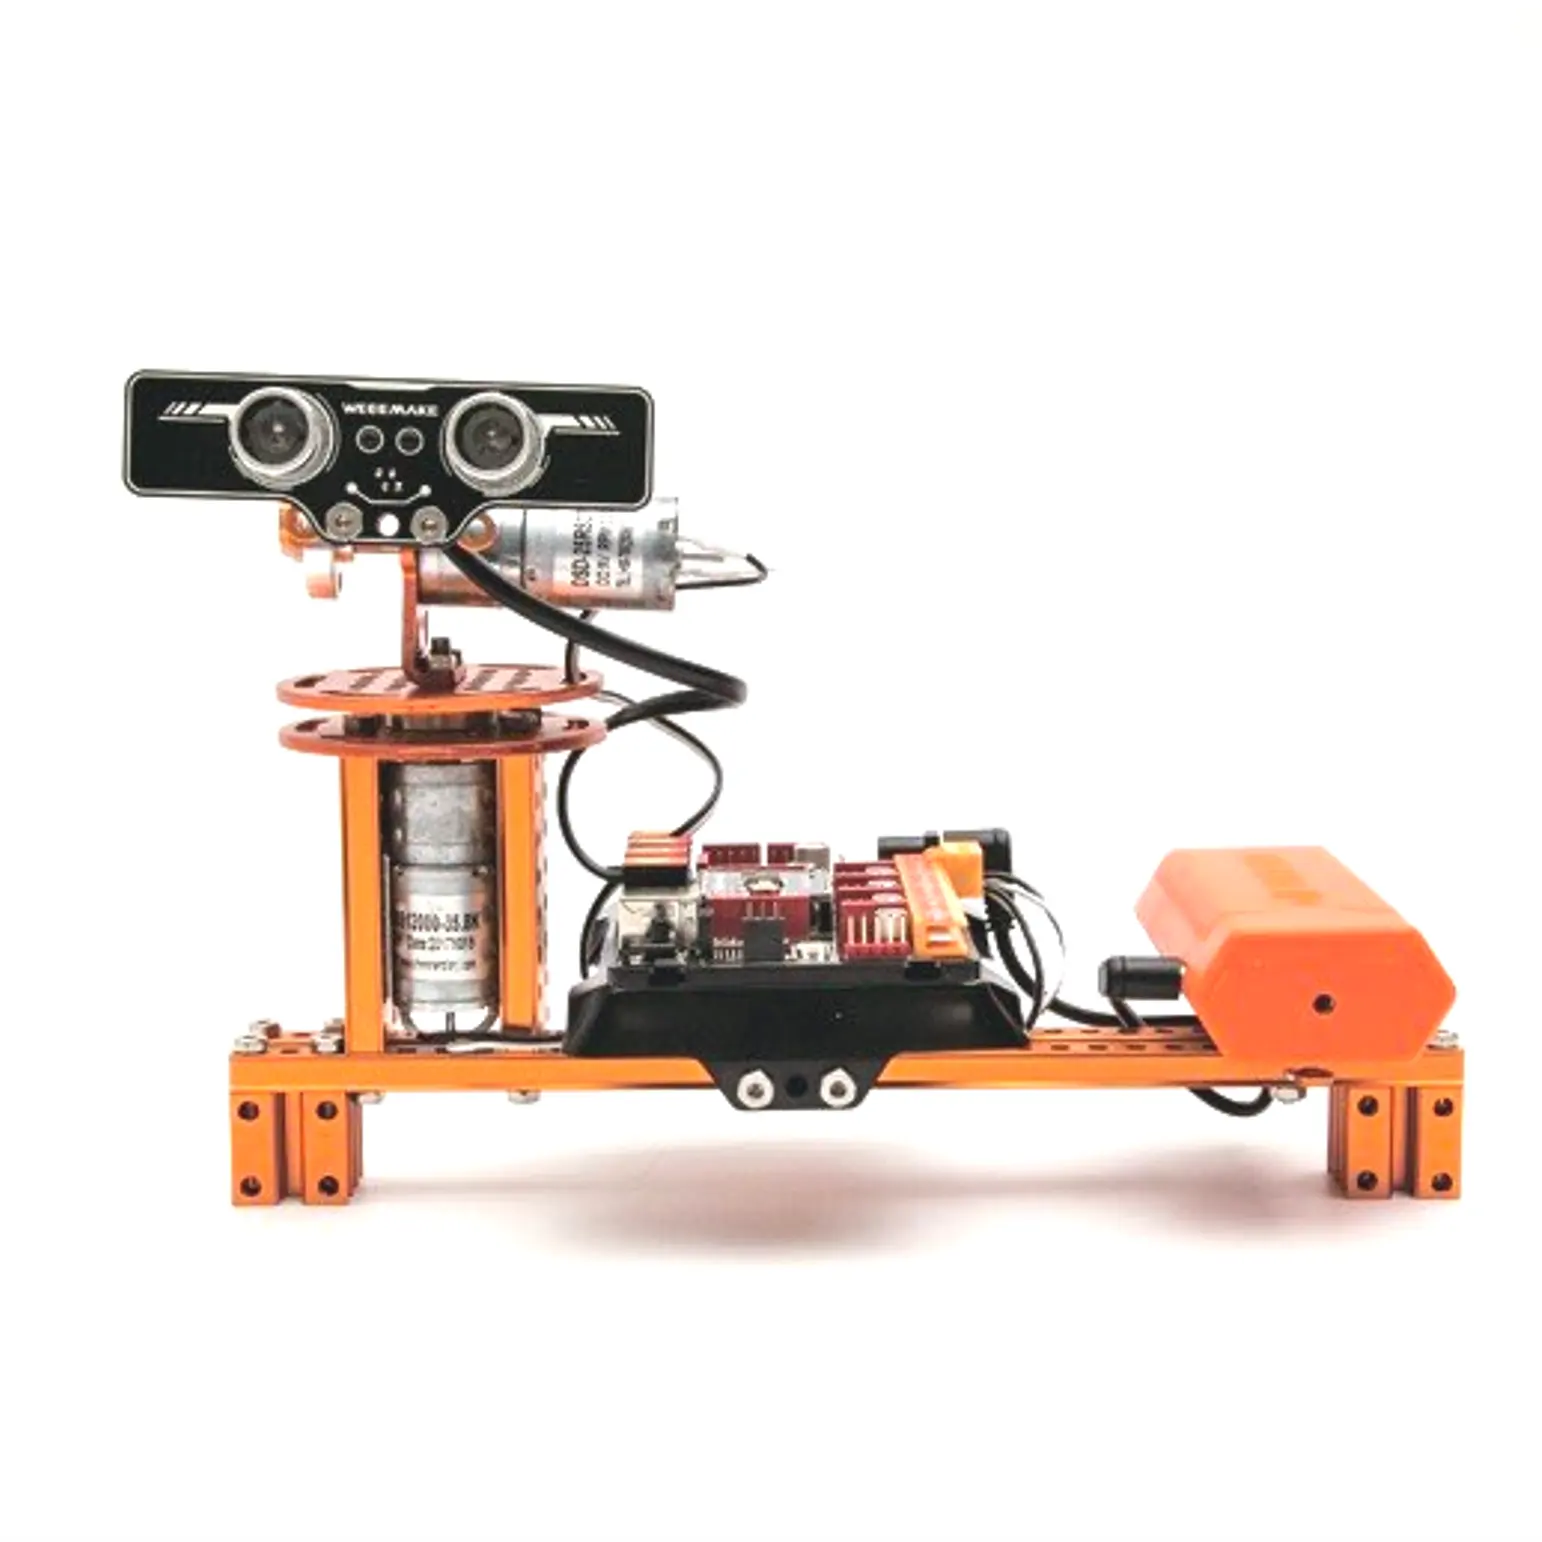 धातु शैक्षिक खिलौने रोबोटिक प्रशिक्षण स्कूल के बच्चे के लिए 9-में-1 विज्ञान किट रोबोट किट सीखने के यांत्रिक <span class=keywords><strong>सिद्धांत</strong></span>